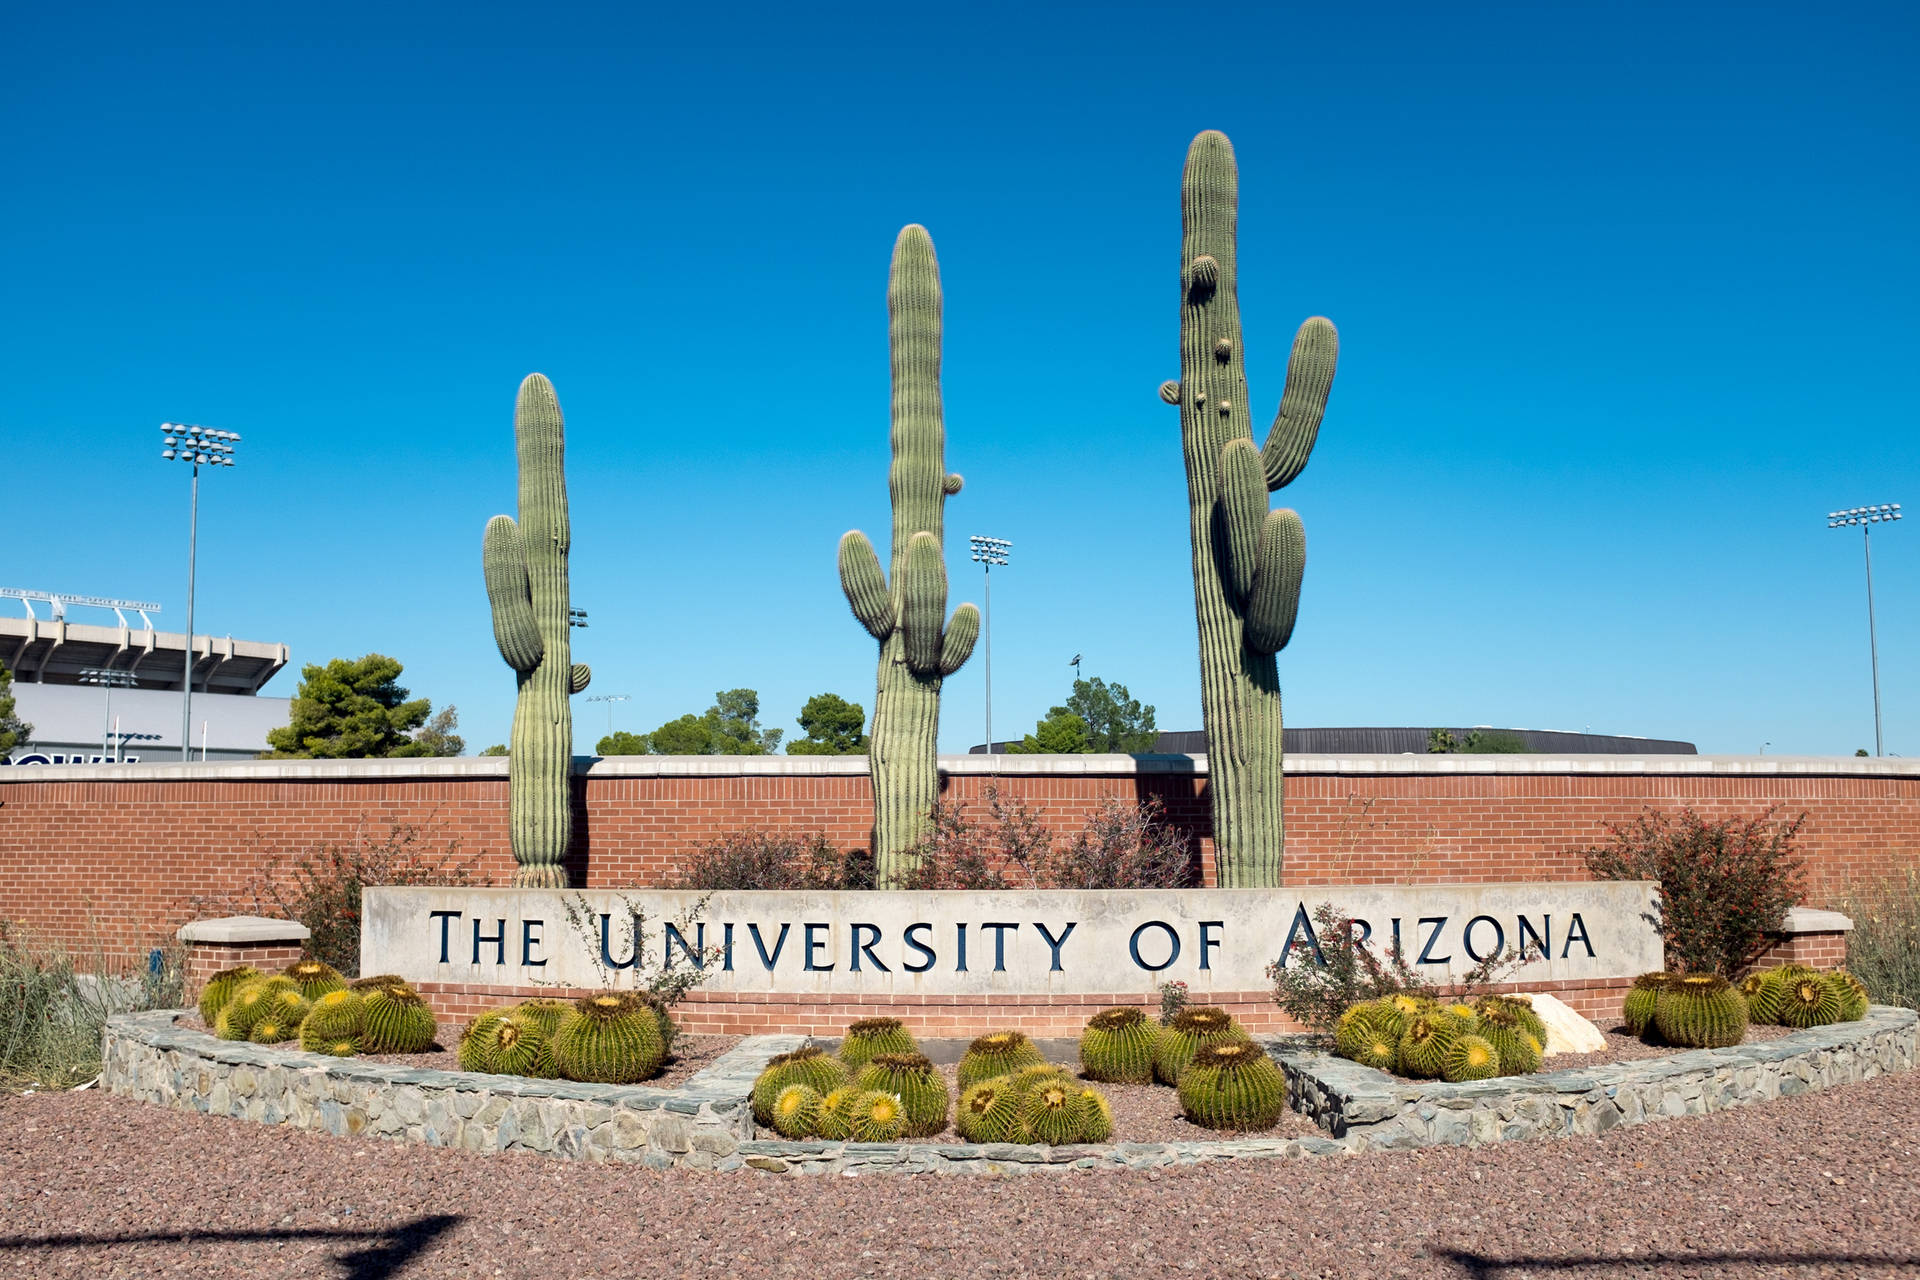 University Of Arizona Arranged Cacti Background